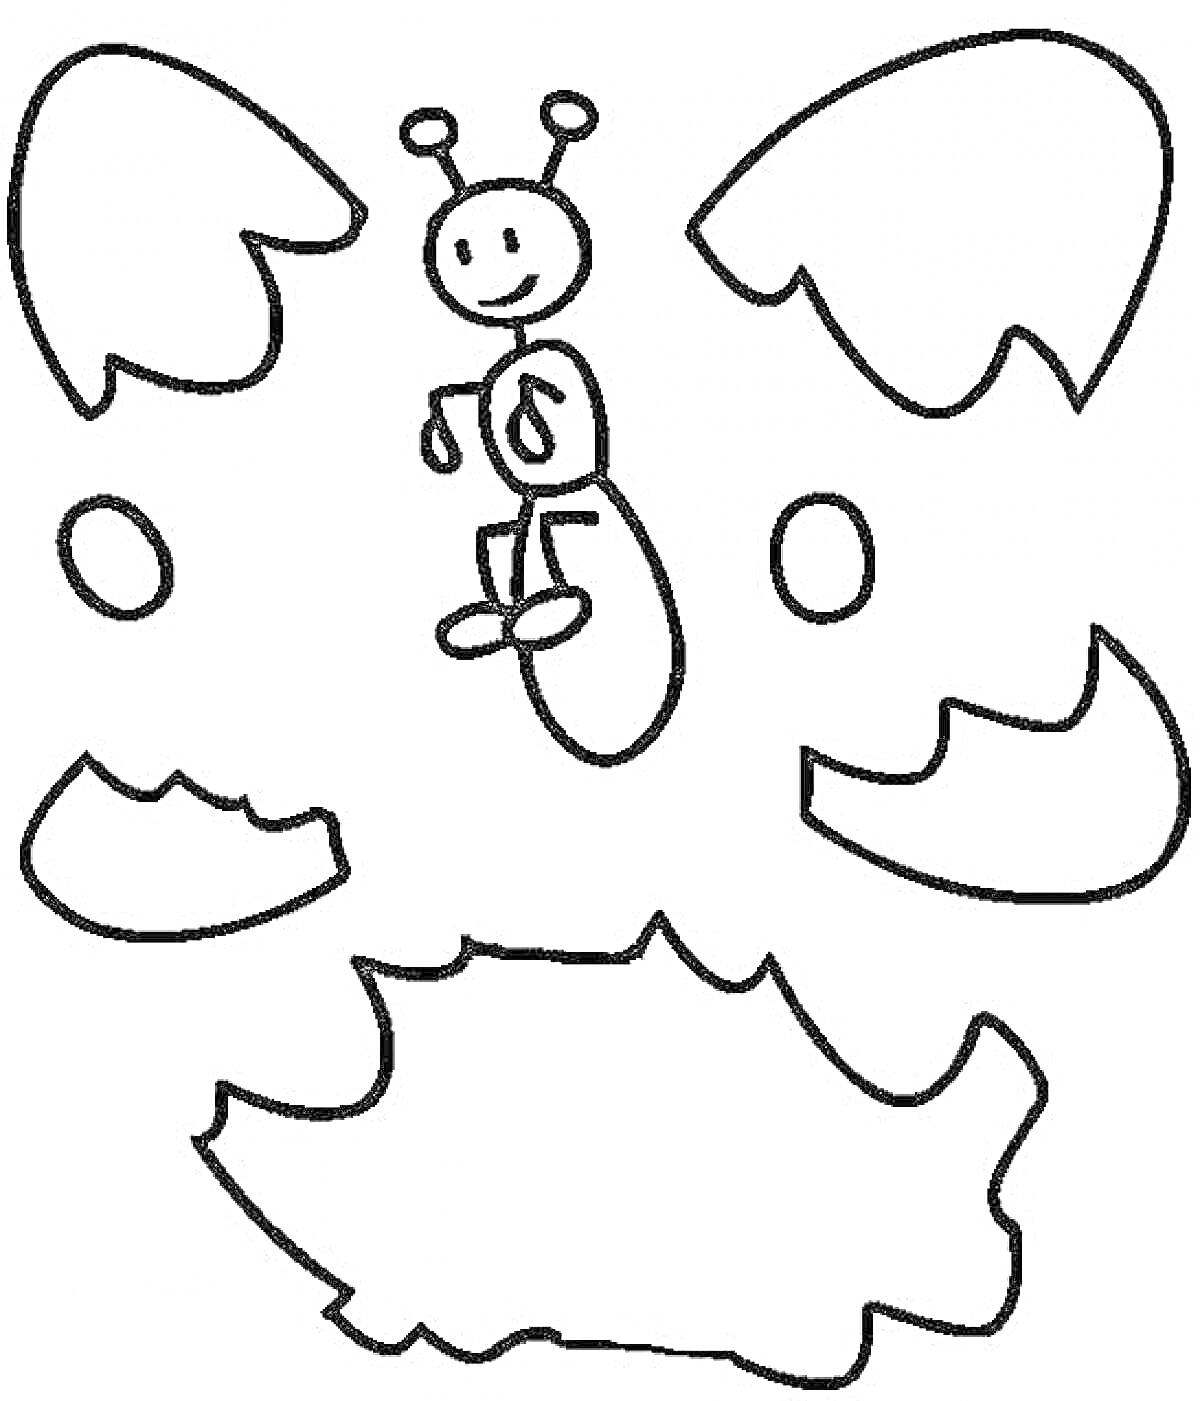 Раскраска Бабочка с усиками, круглыми глазами и фигурными крыльями